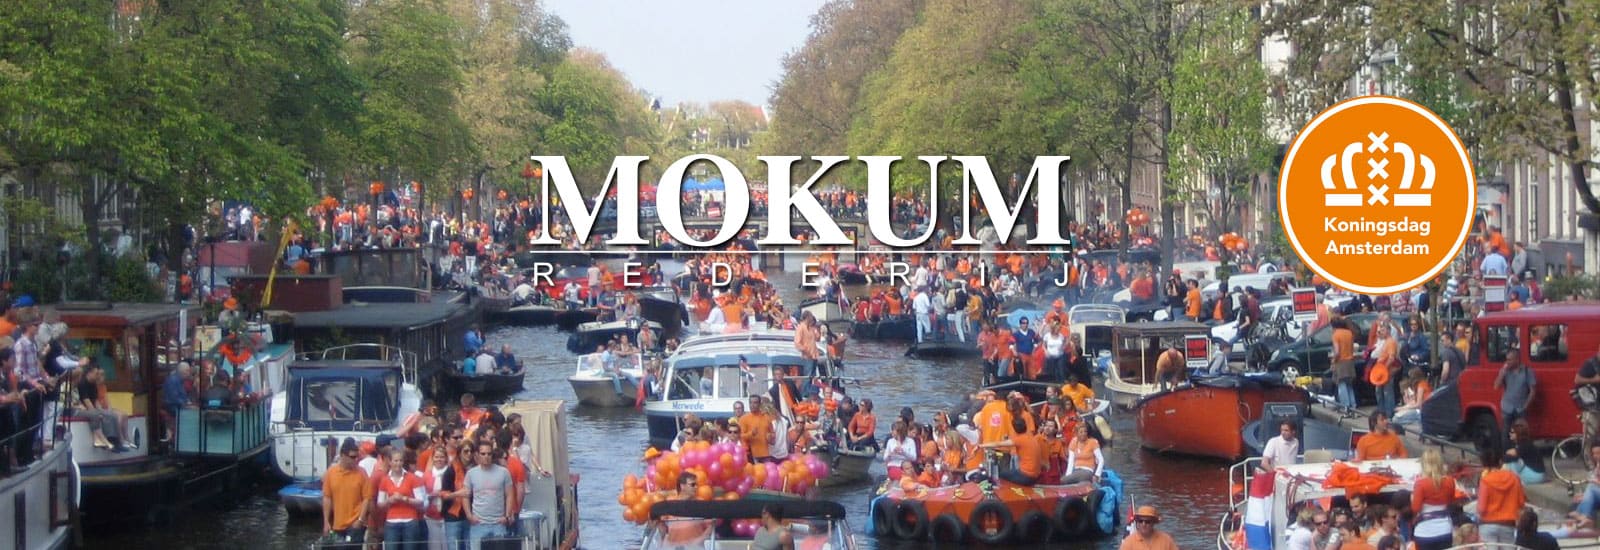 Specials bij Rederij Mokum | Vrijgezellenfeest | Trouwen in de Amsterdamse grachten | Wijnproeverij op het water 